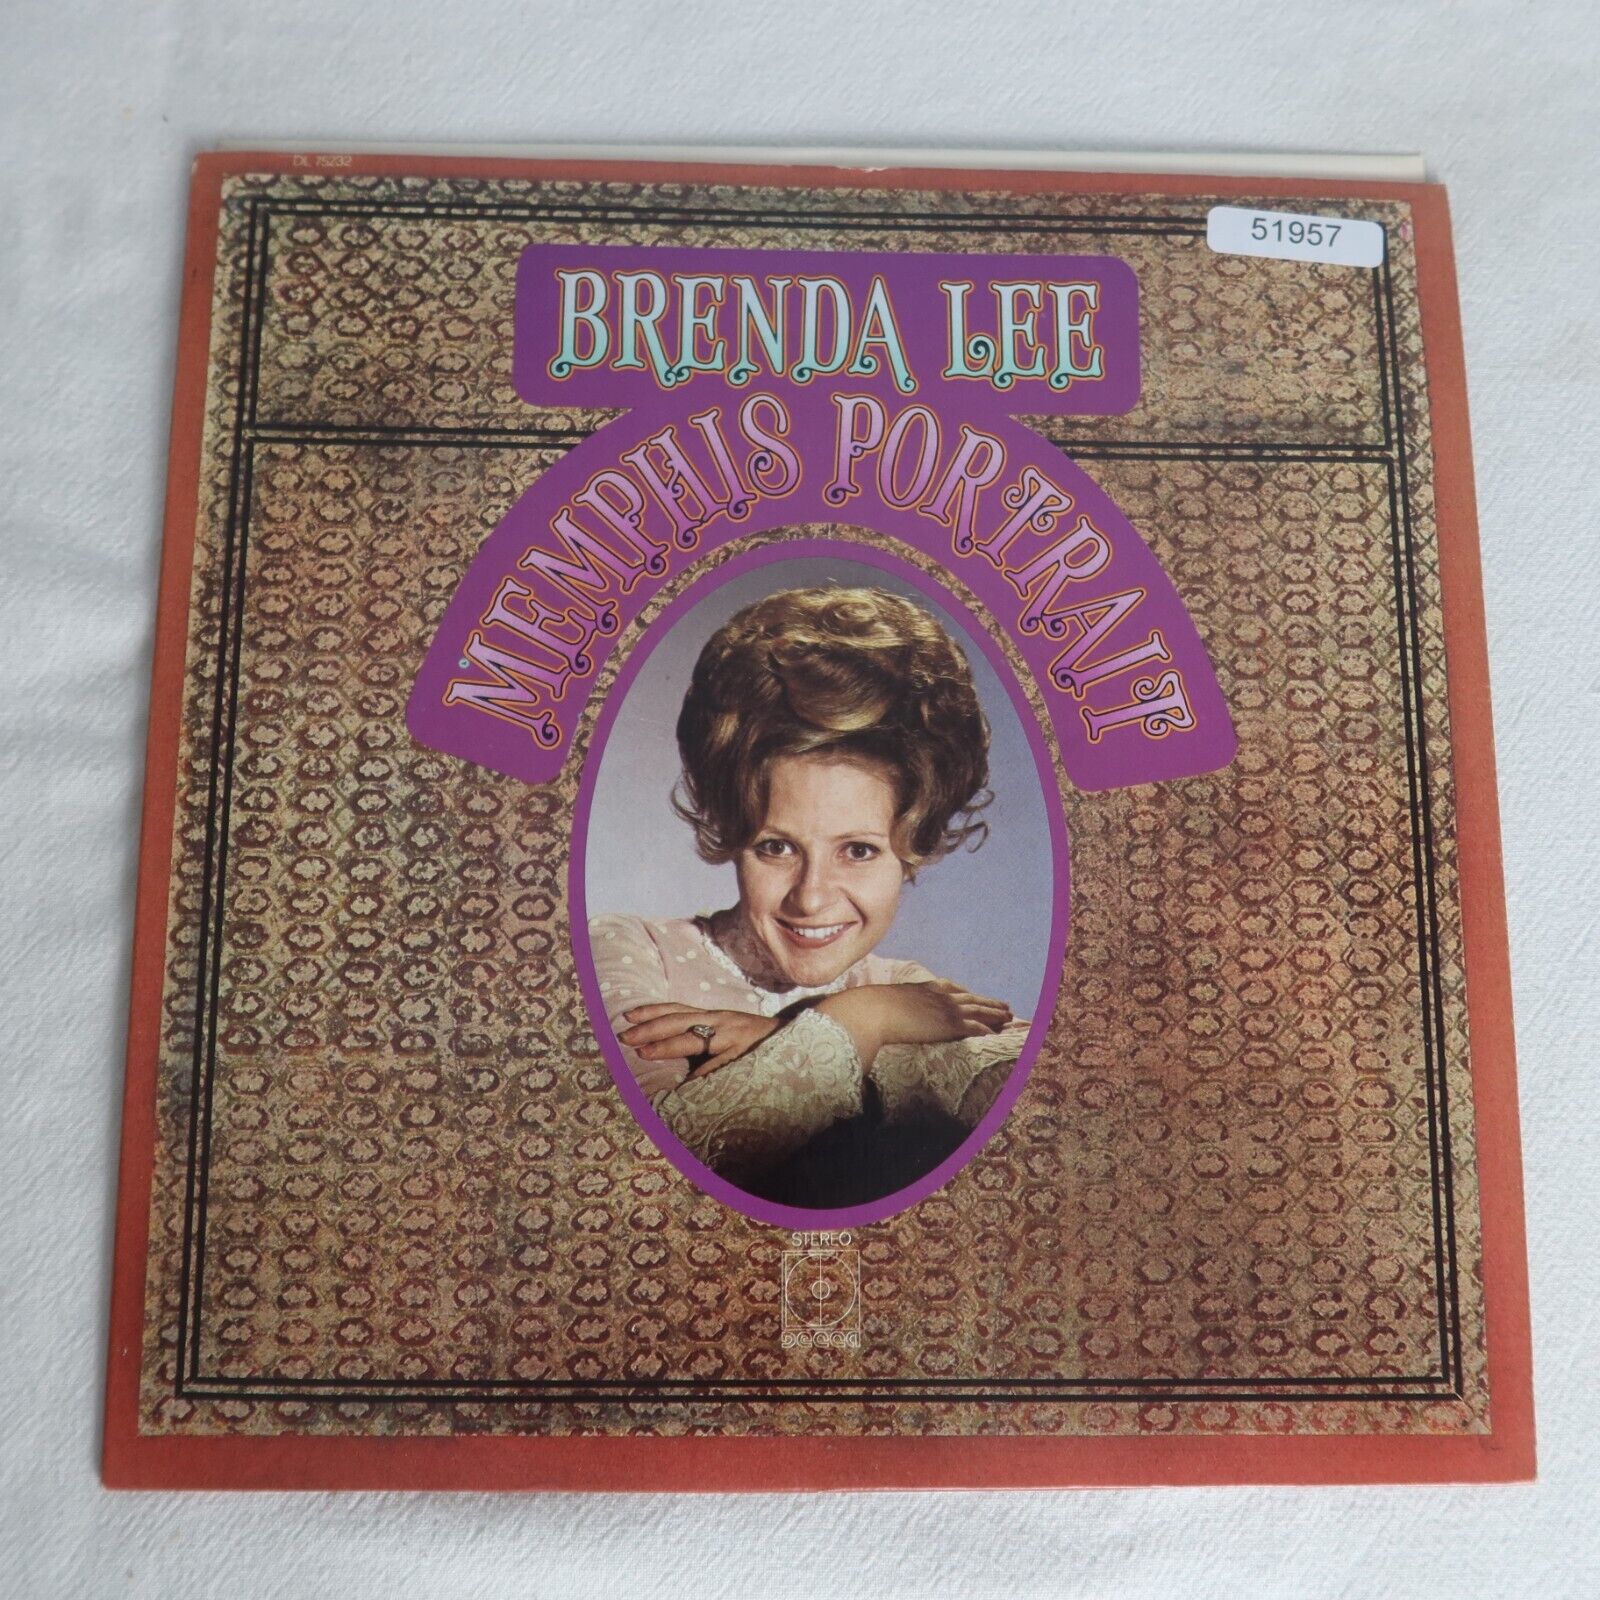 Brenda Lee Memphis Portrait LP Vinyl Record Album